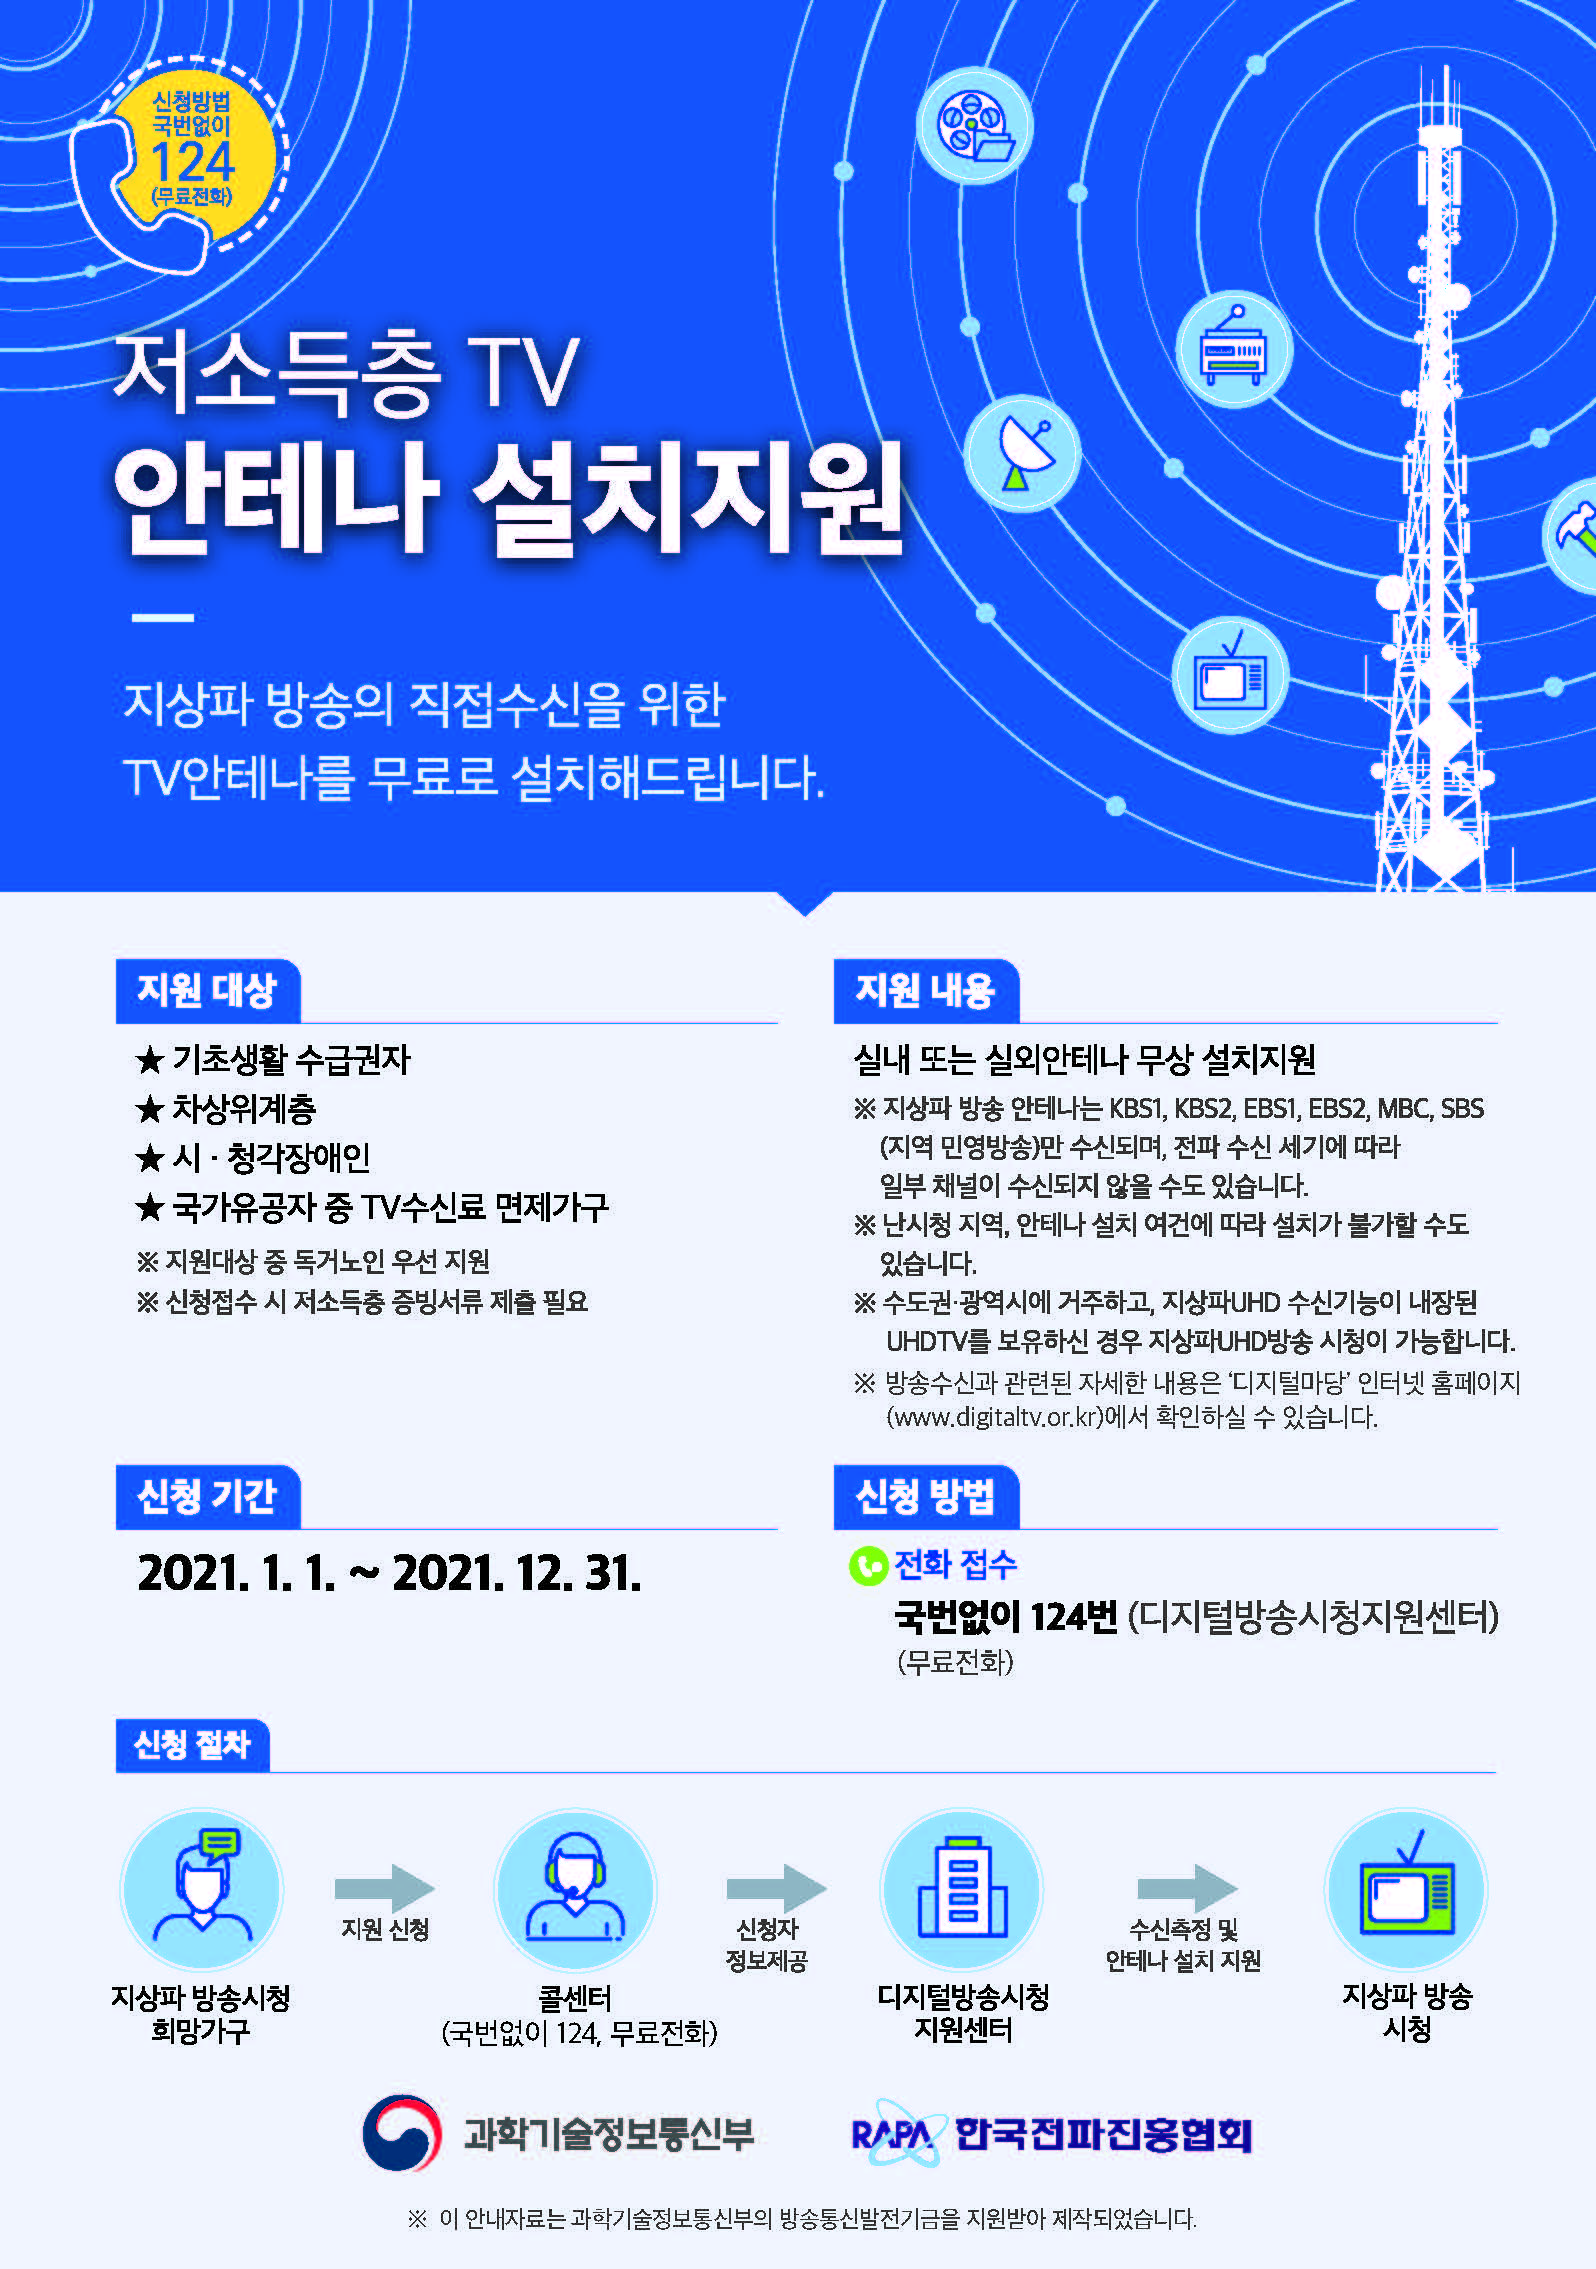 2021년 저소득층 TV안테나 설치지원 안내문 1부1.jpg